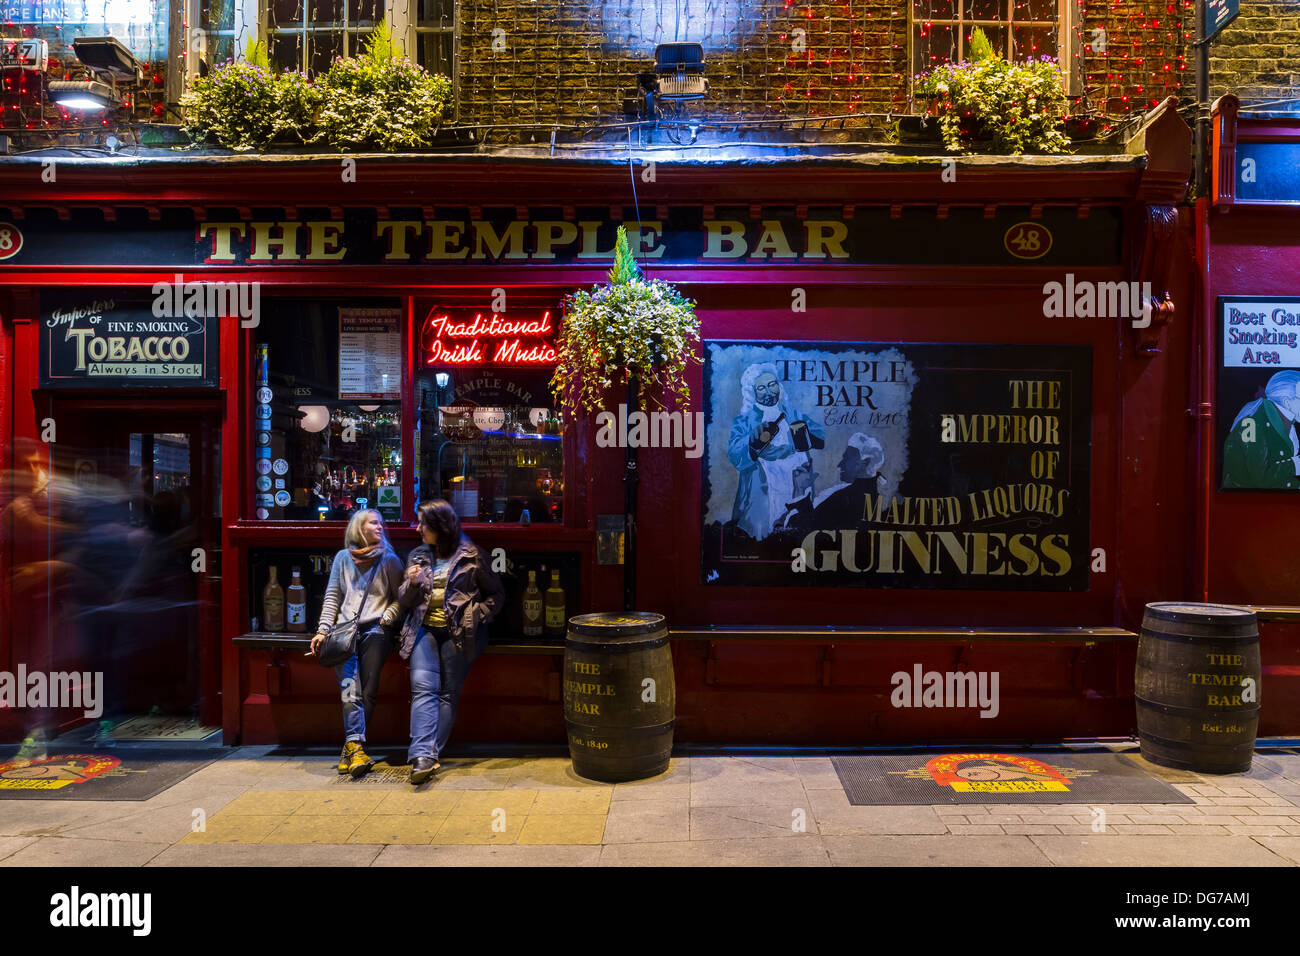 Dublino, Irlanda - 14 Ottobre 2013: un tradizionale pub irlandese chiamato il Temple Bar su una strada con lo stesso nome del Tempio B Foto Stock